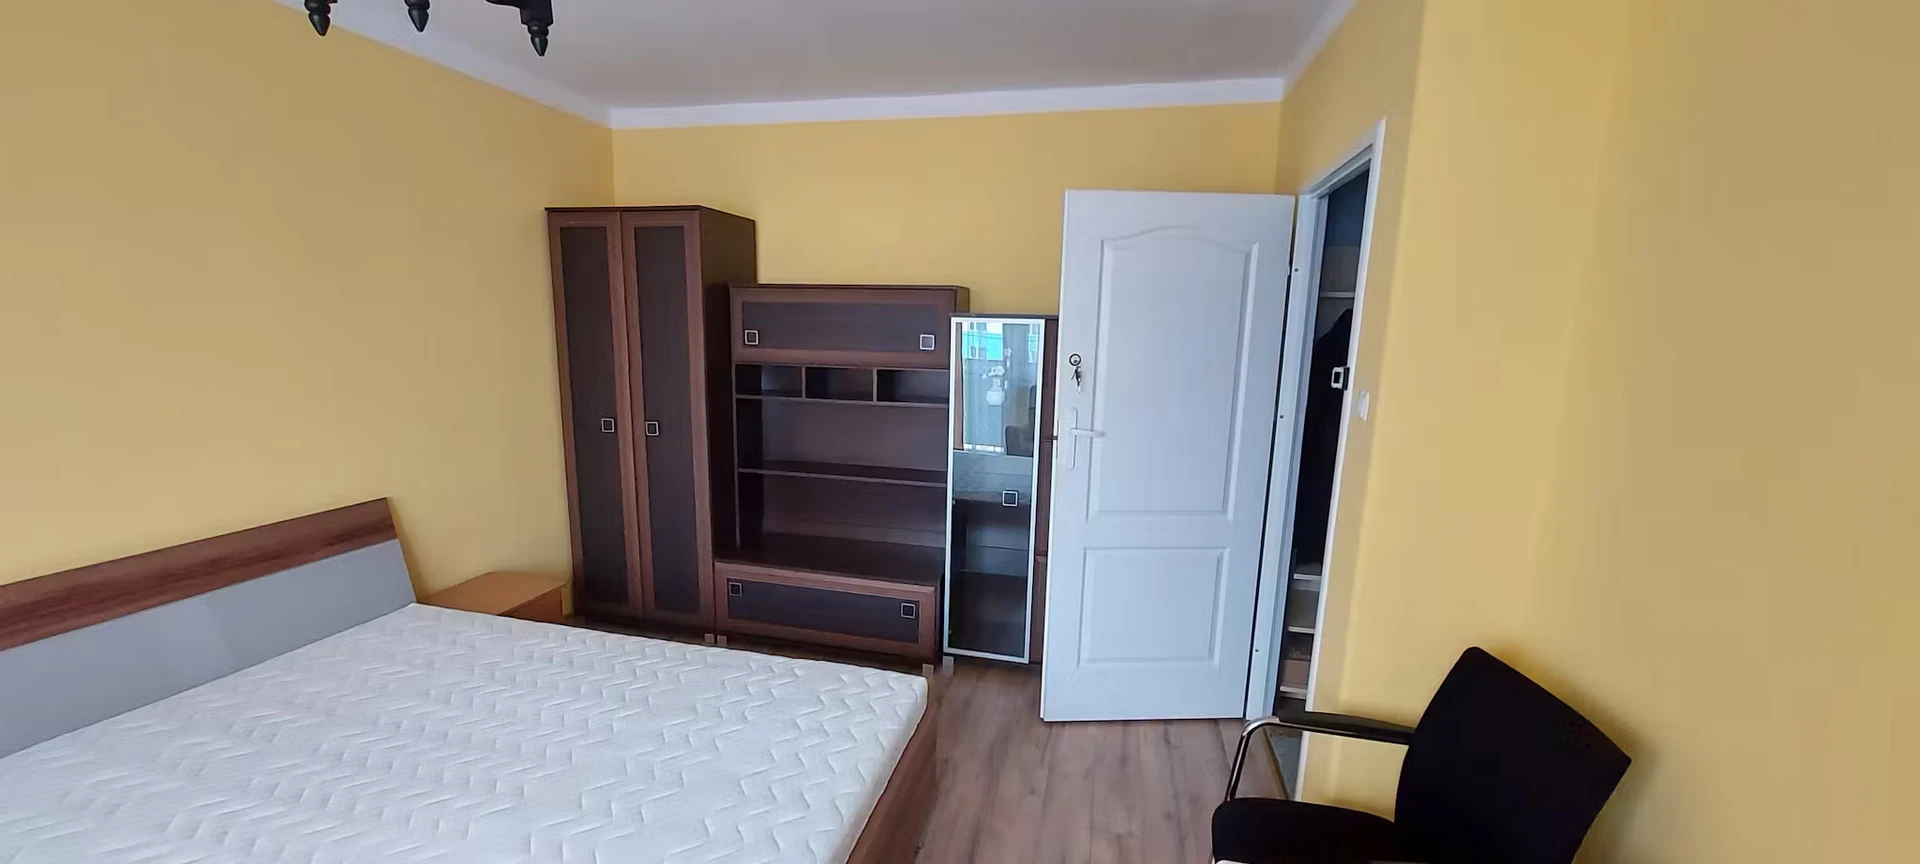 Chambre à louer avec lit double Rzeszów